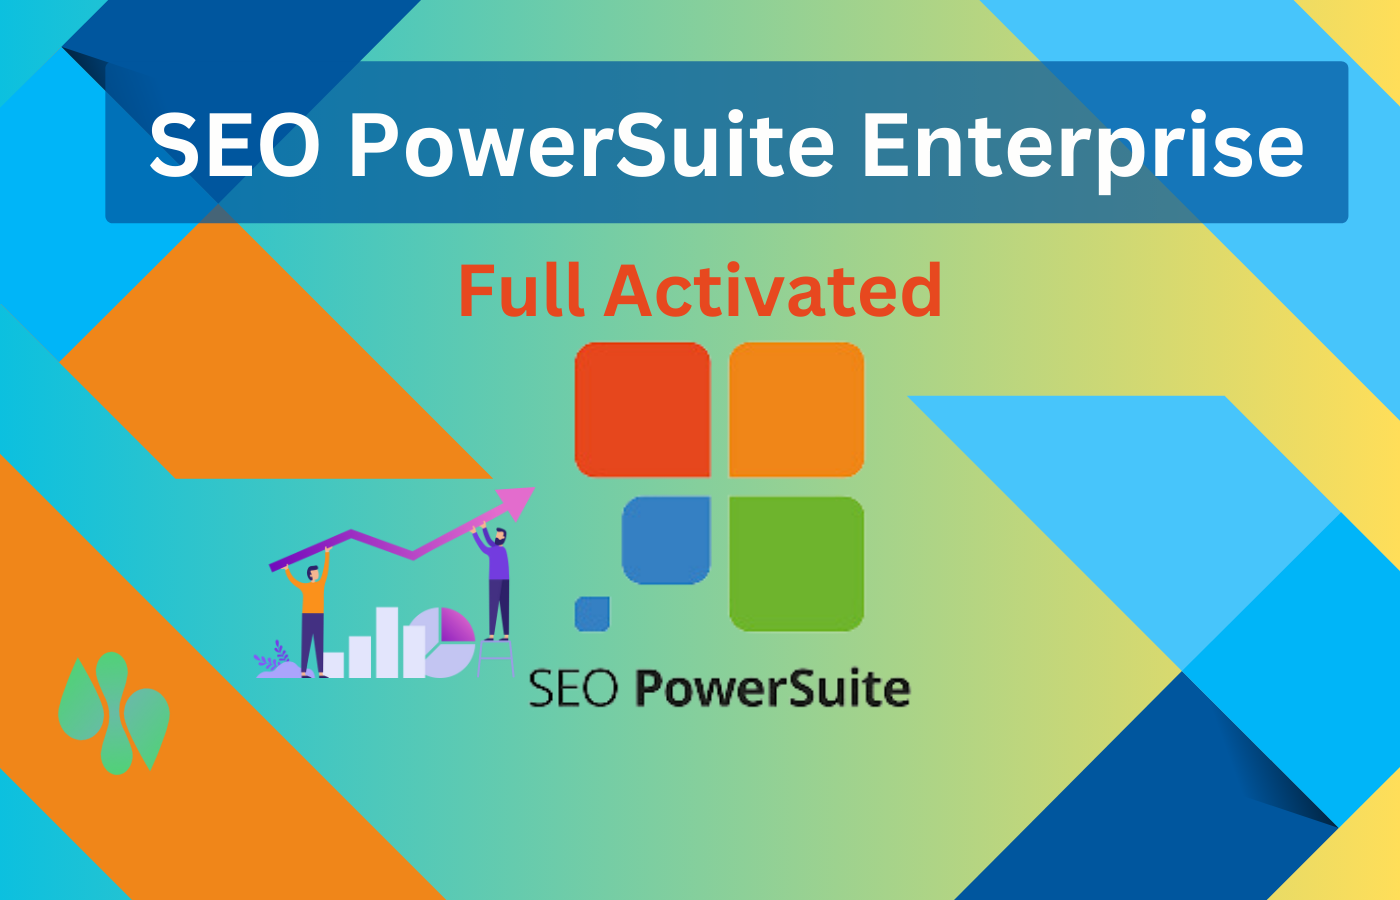 SEO PowerSuite Enterprise Full Activated